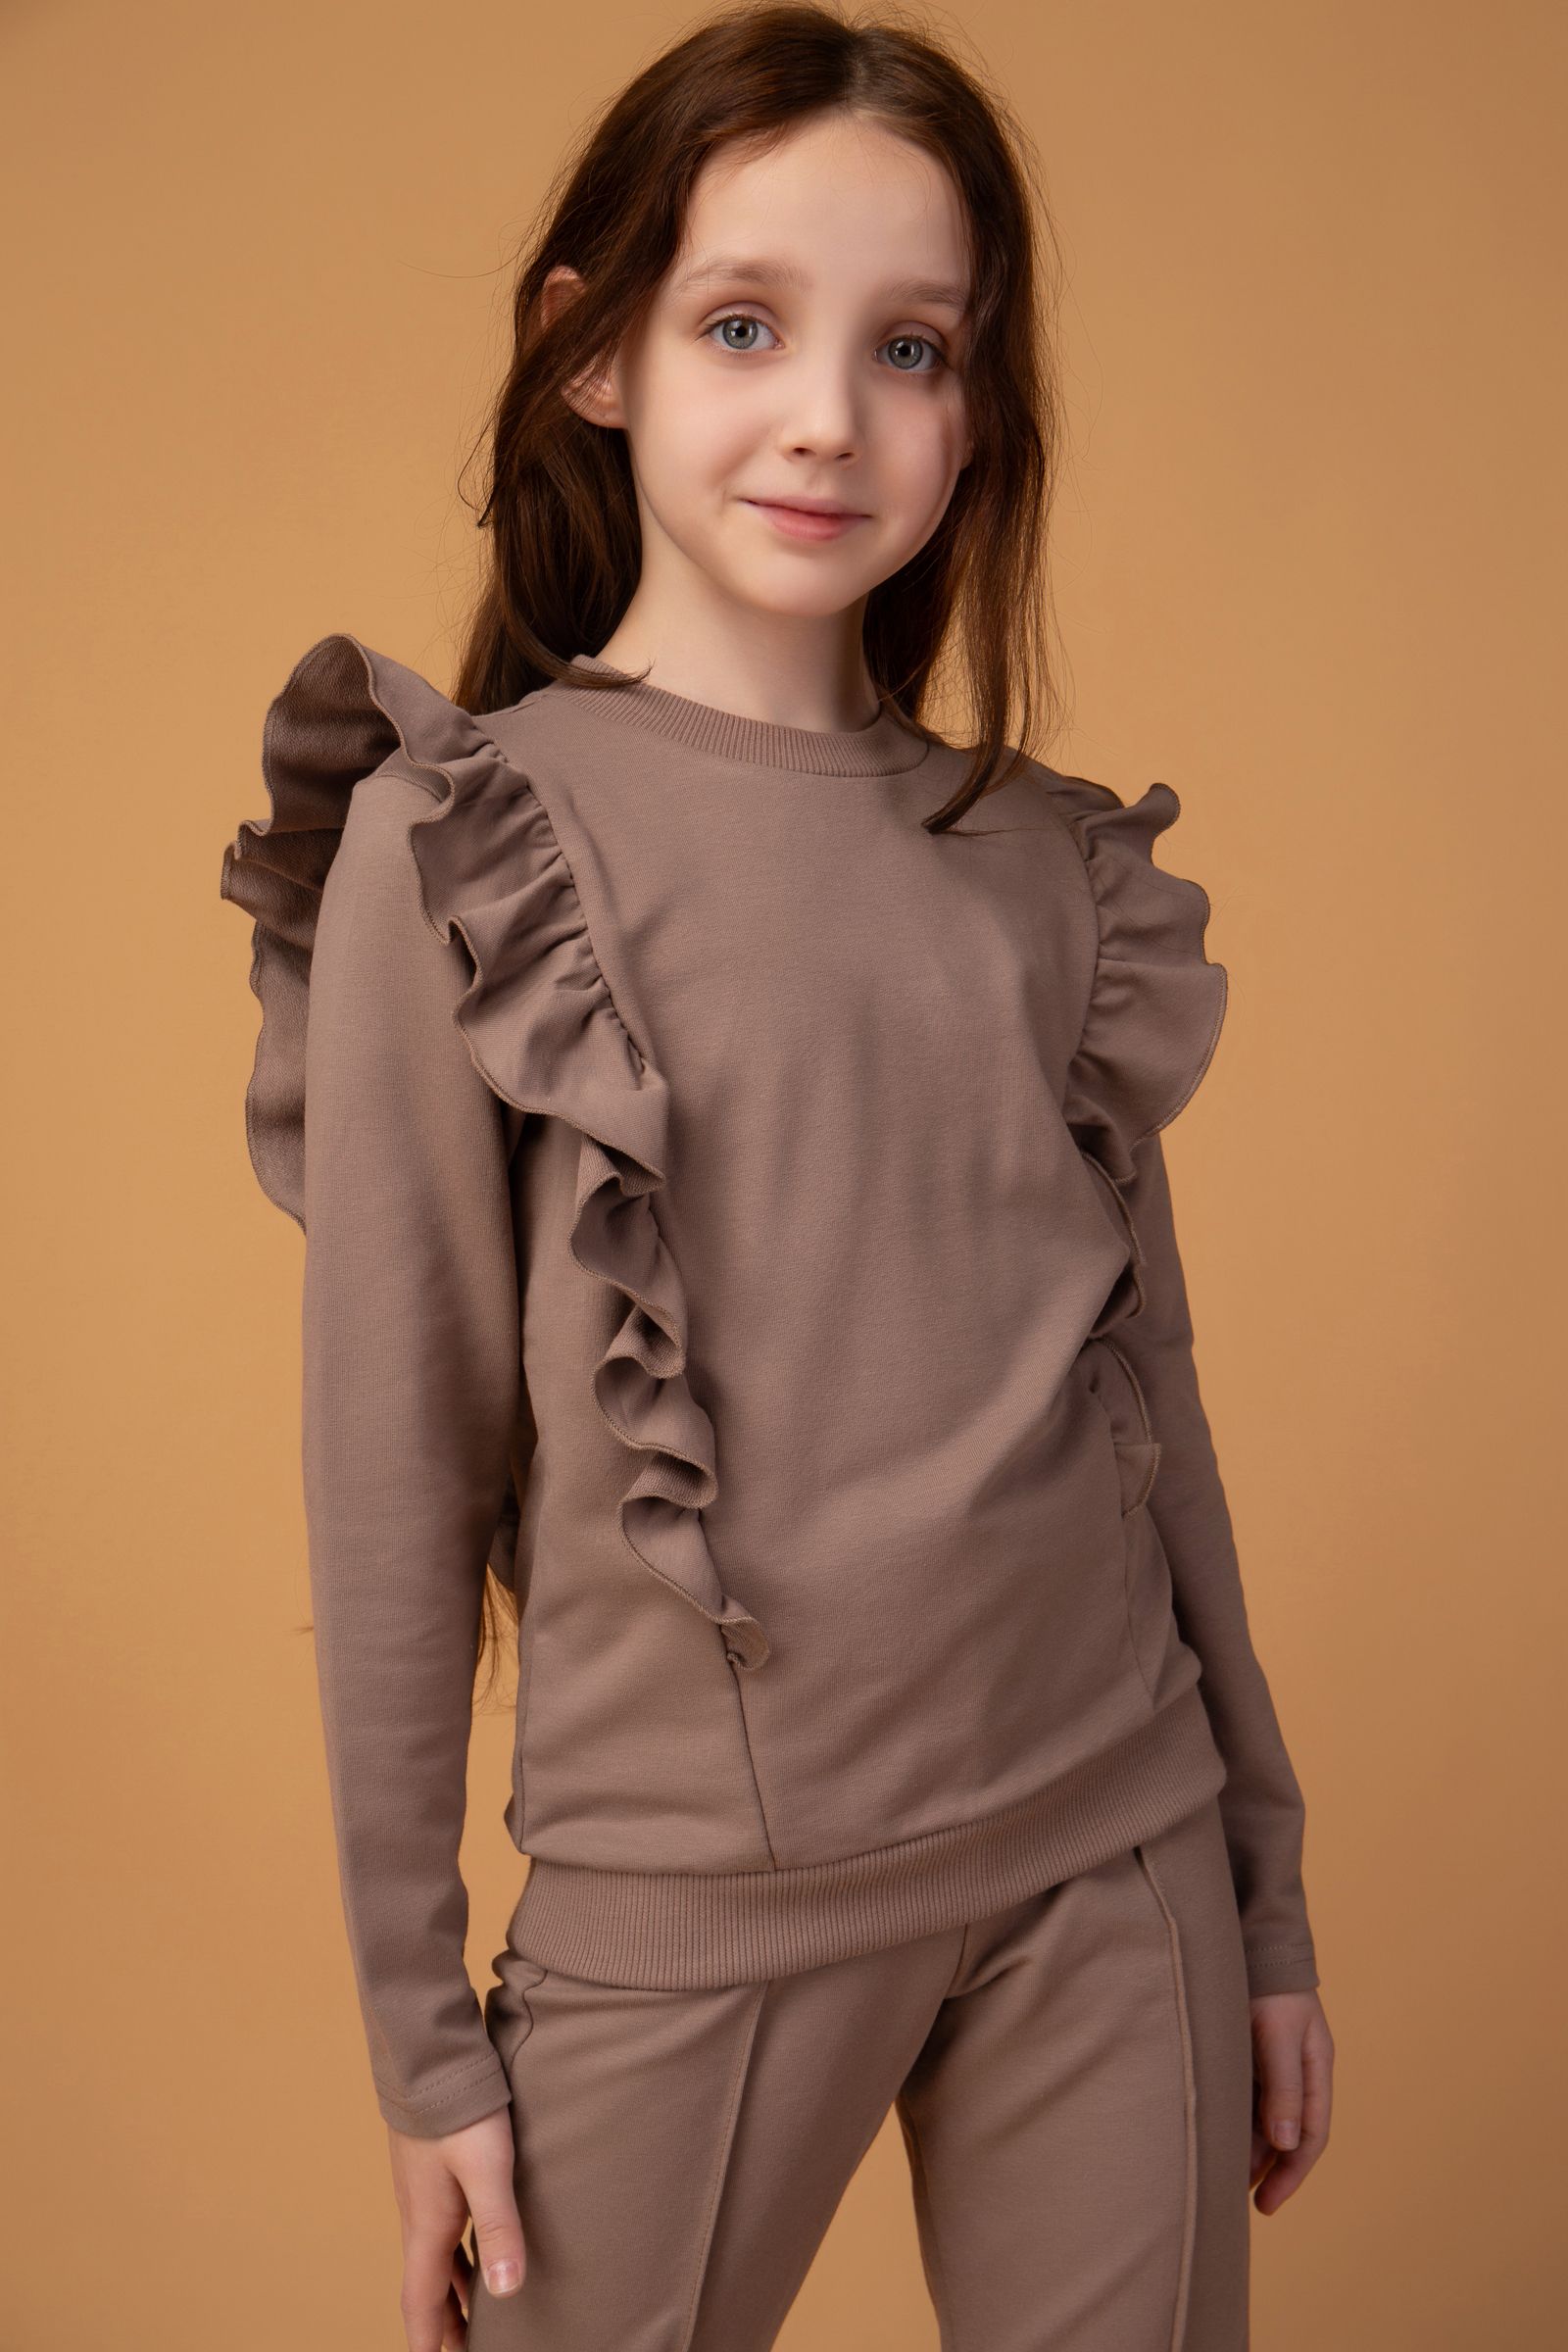 Костюм-КС15-4104 оптом от производителя детской одежды 'Алёна'